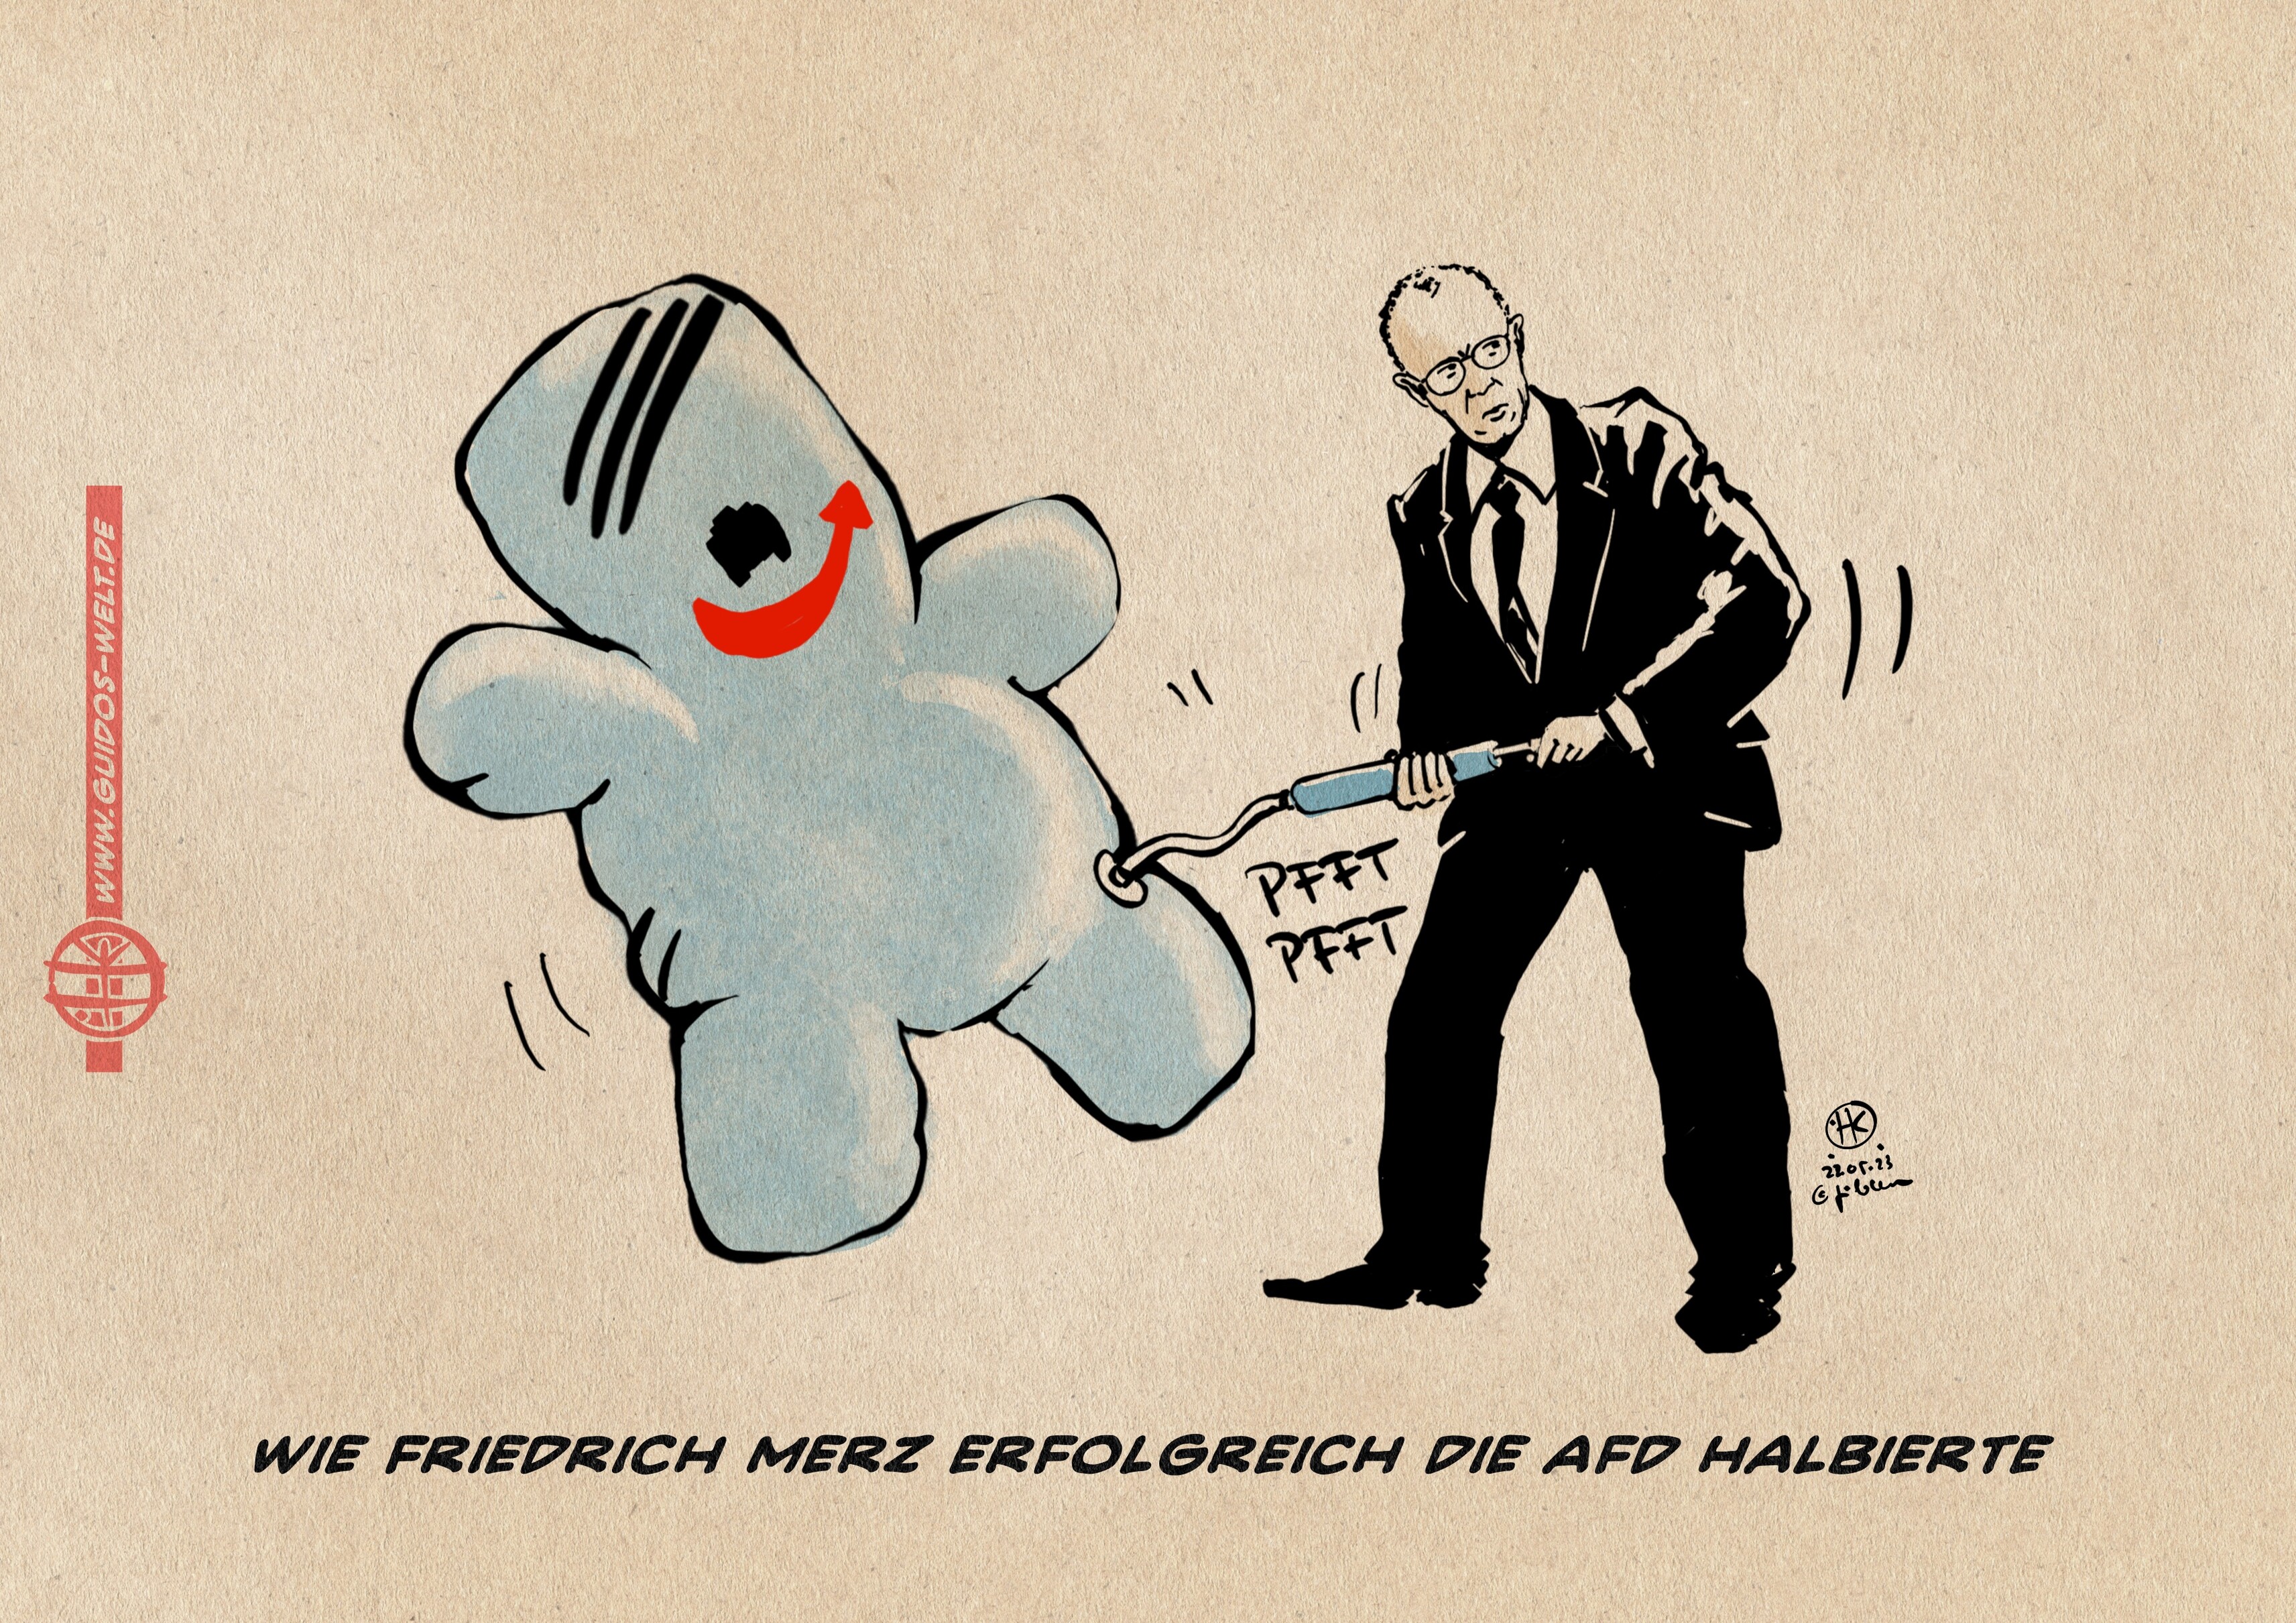 Illustration: Friedrich Merz pumpt eine AFD Ballon-Figur auf. Die Figur ist blau, hat einen seitenscheitel, Gasmaskenbart und den AFD Pfeil als grinsenden Mund. Textzeile: Wie Friedrich Merz erfolgreich die AfD halbierte.